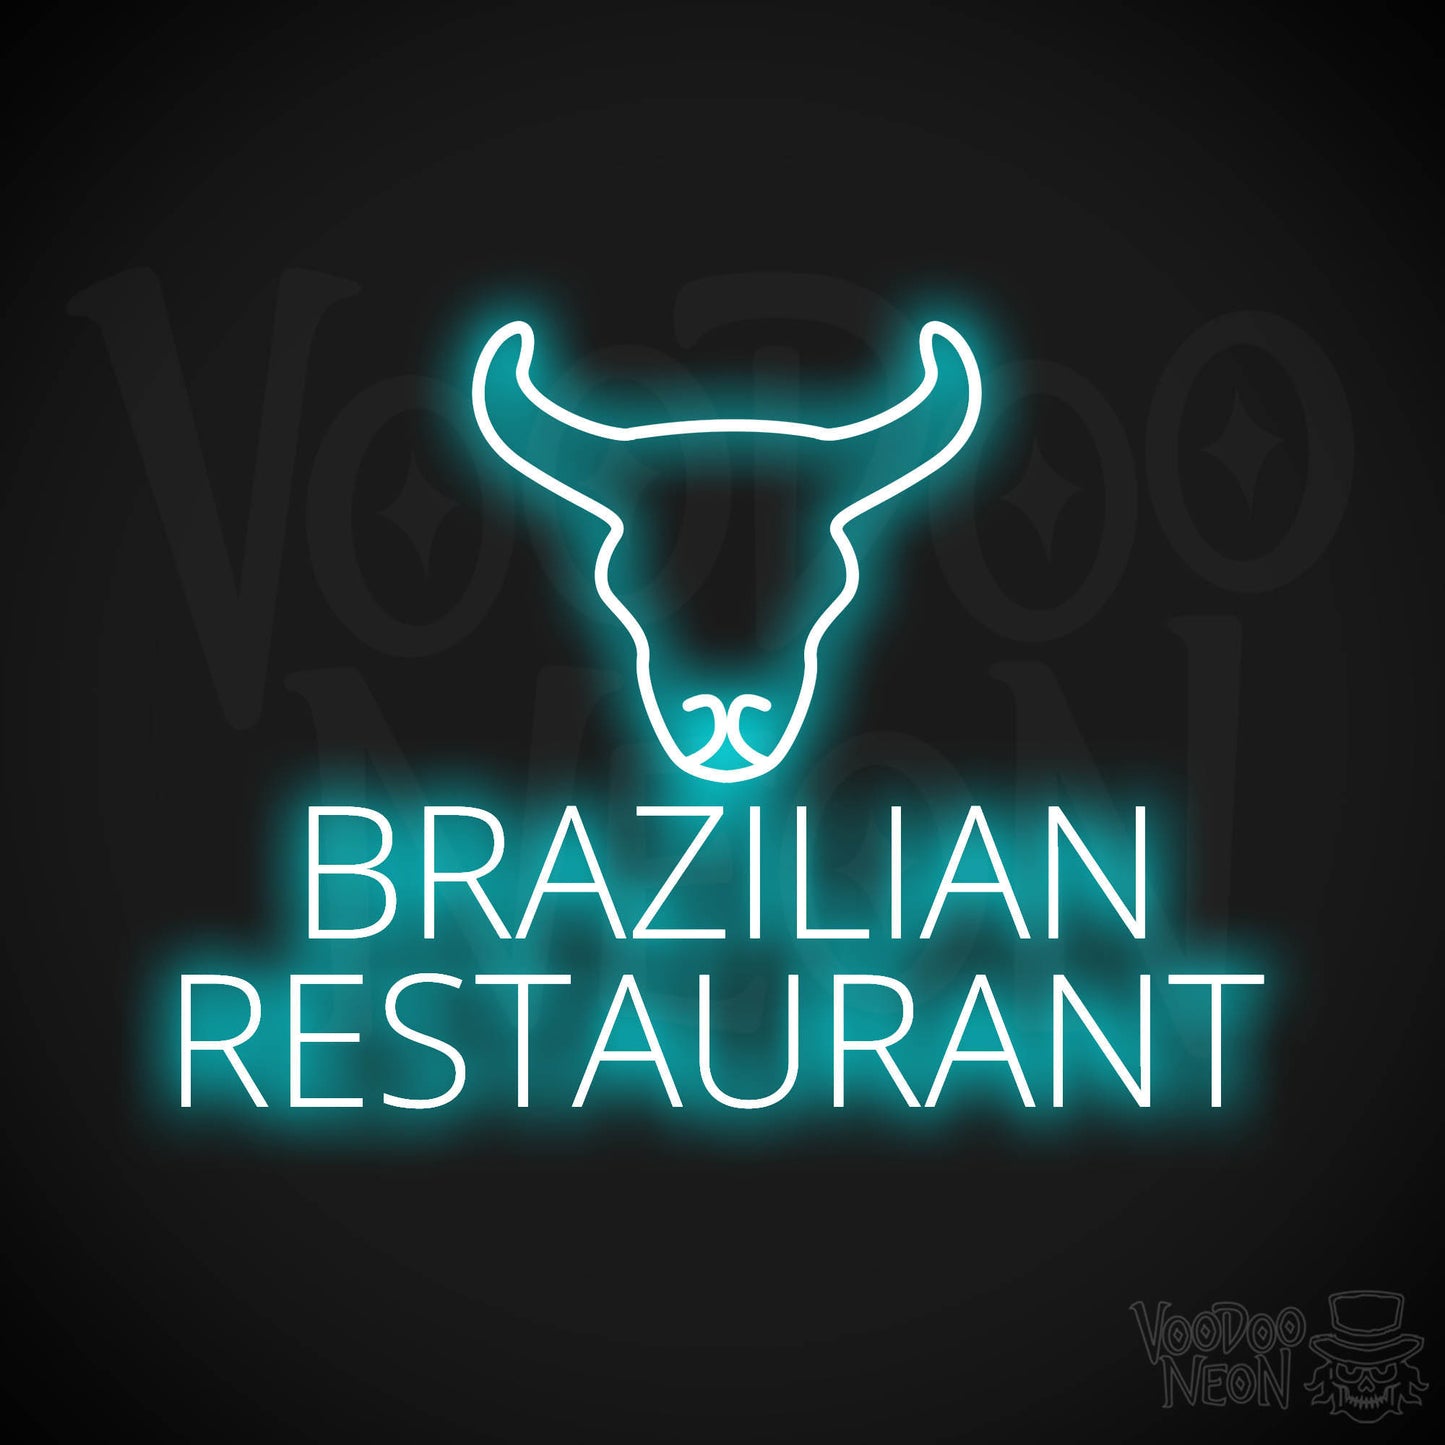 Brazilian Restaurant LED Neon - Ice Blue